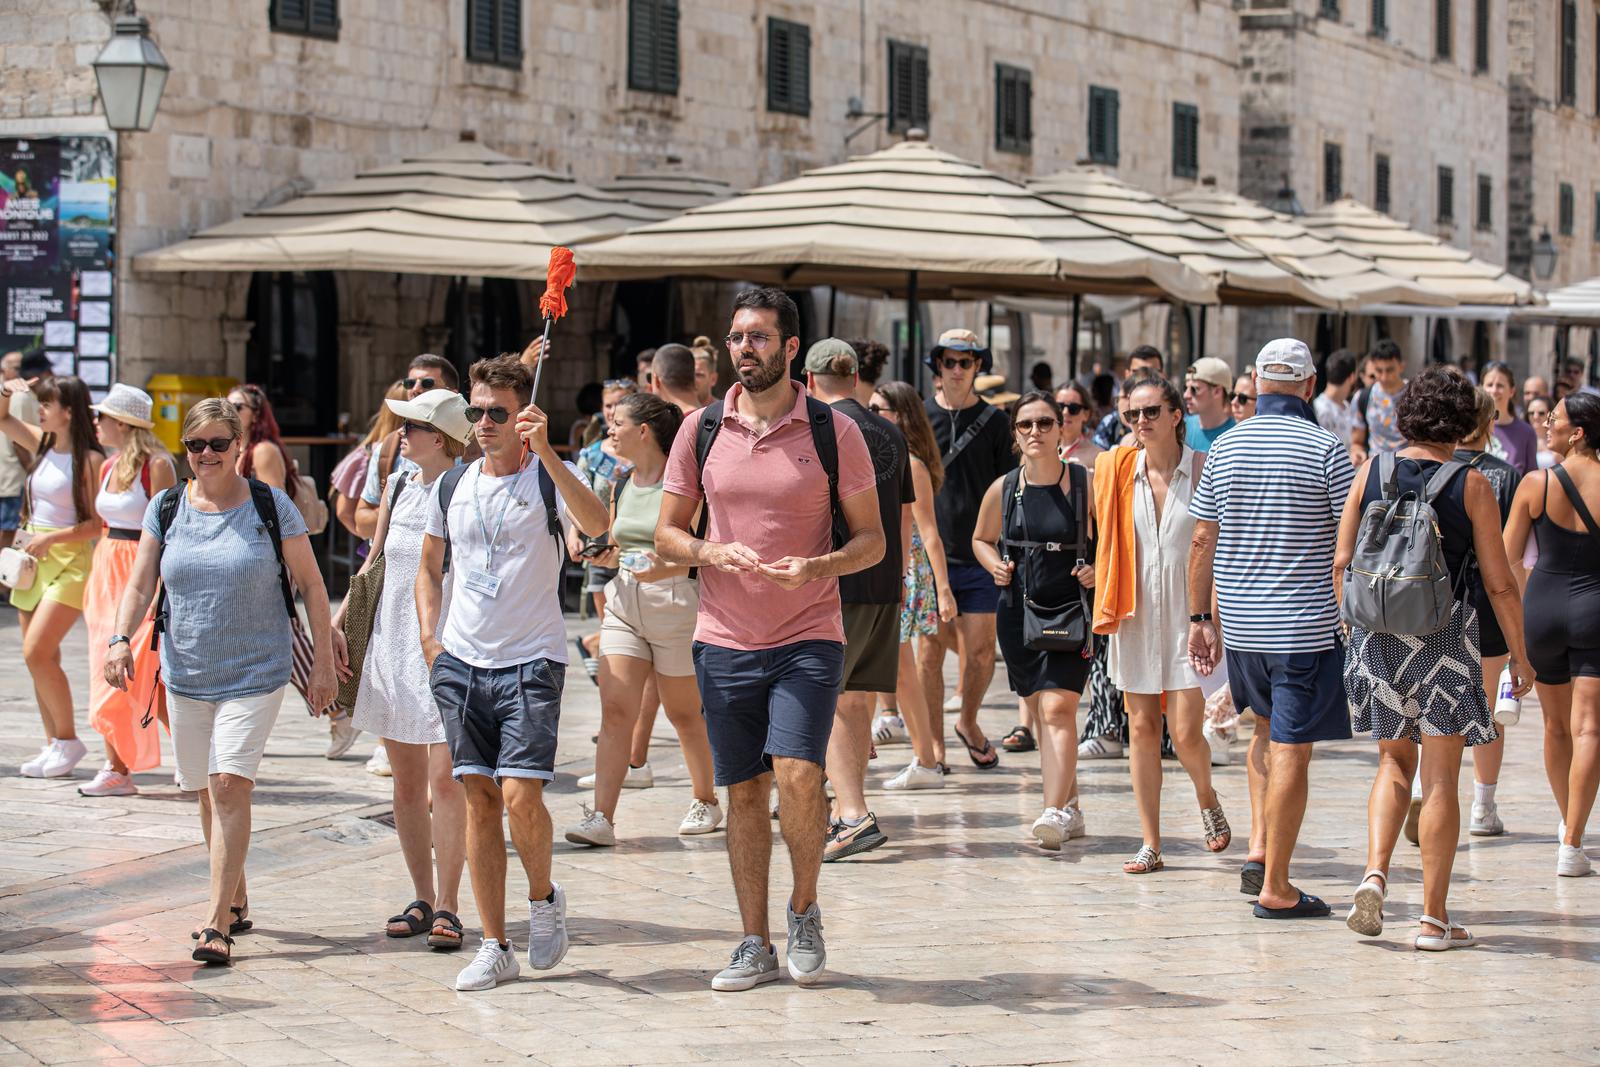 27.08.2022., Stara gradska jezgra, Dubrovnik - Turisti u gradu.
 Photo: Grgo Jelavic/PIXSELL